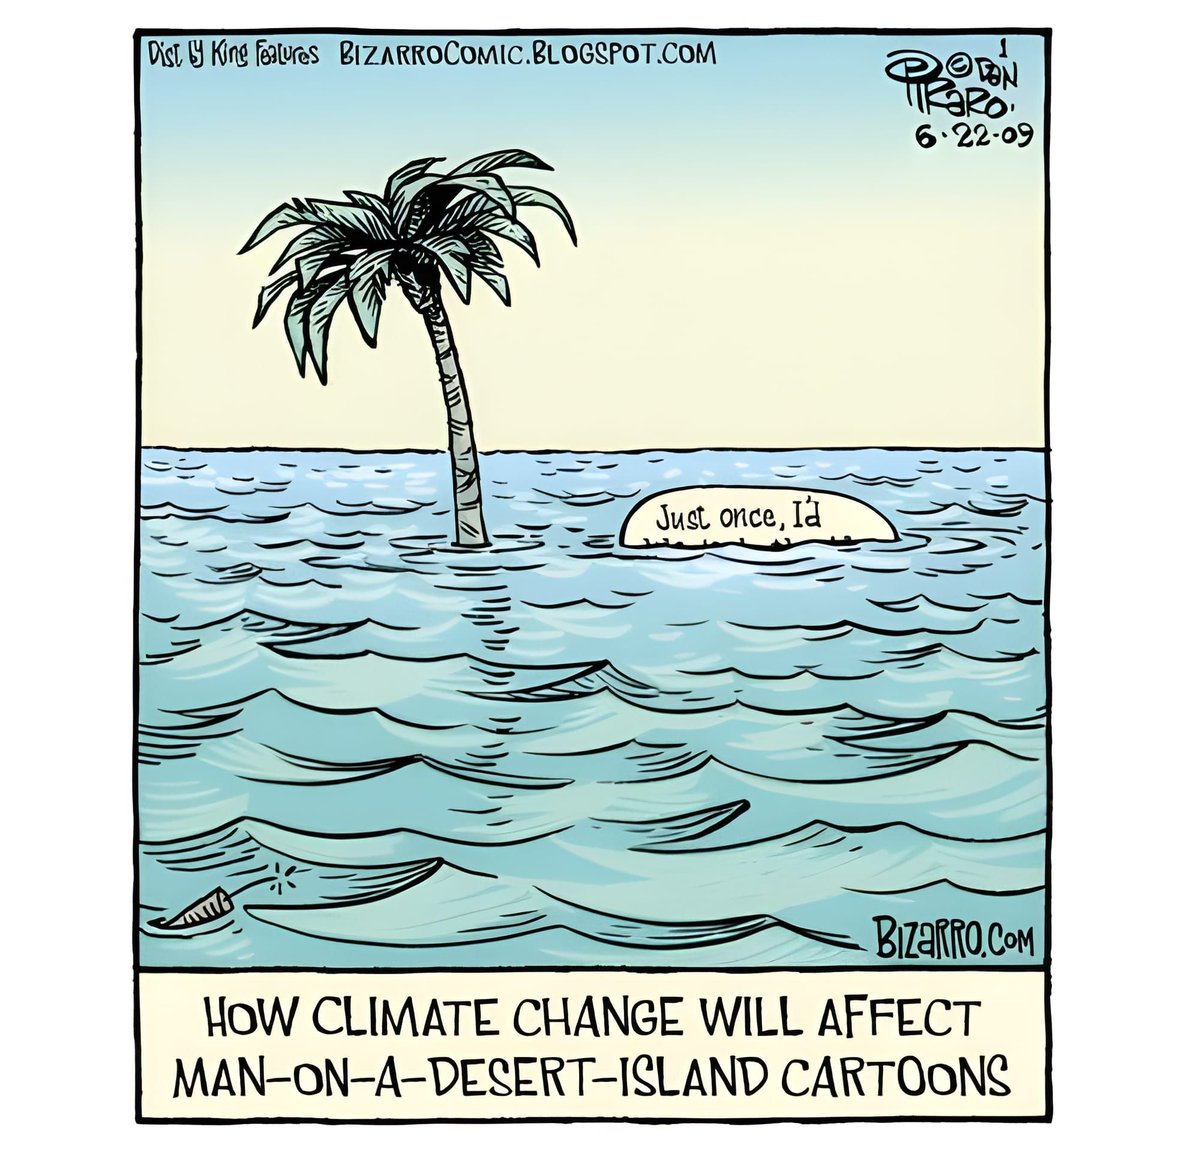 #climatechange #globalwarming